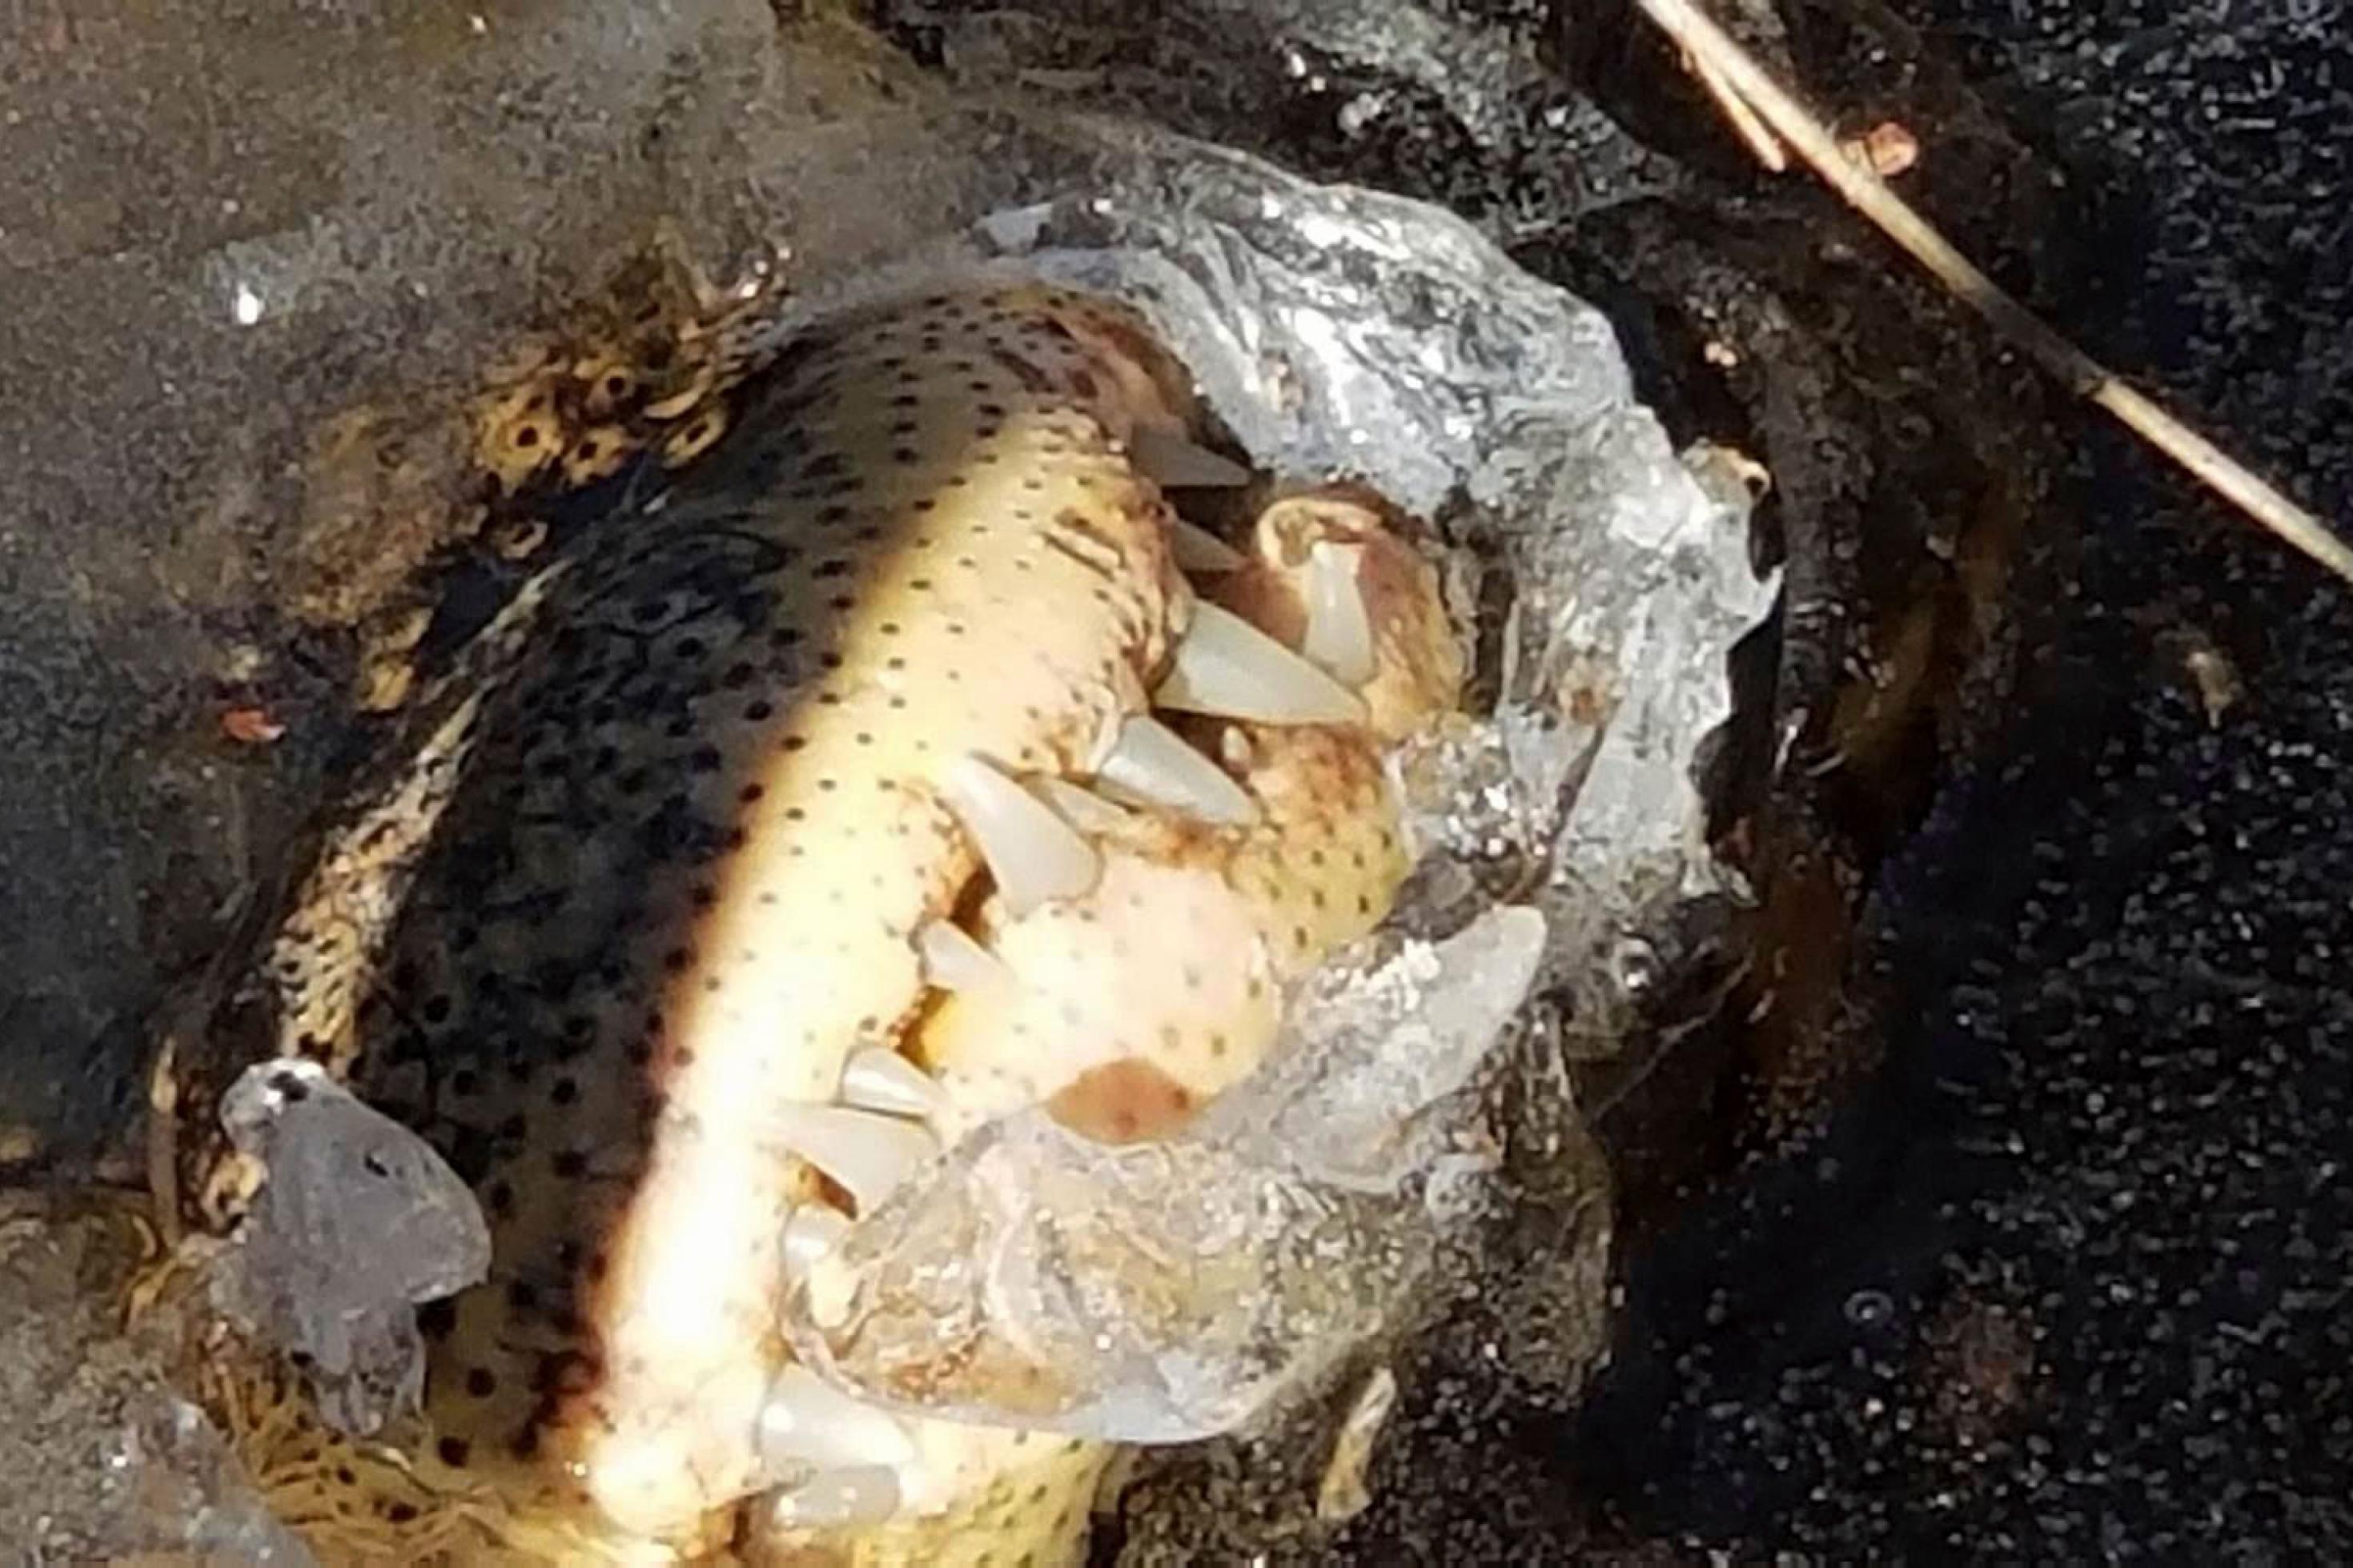 Die Schnauze eines Alligators ragt aus dem Eis eines Gewässers. Man sieht die mächtigen Zähne des Ober- und Unterkiefers.